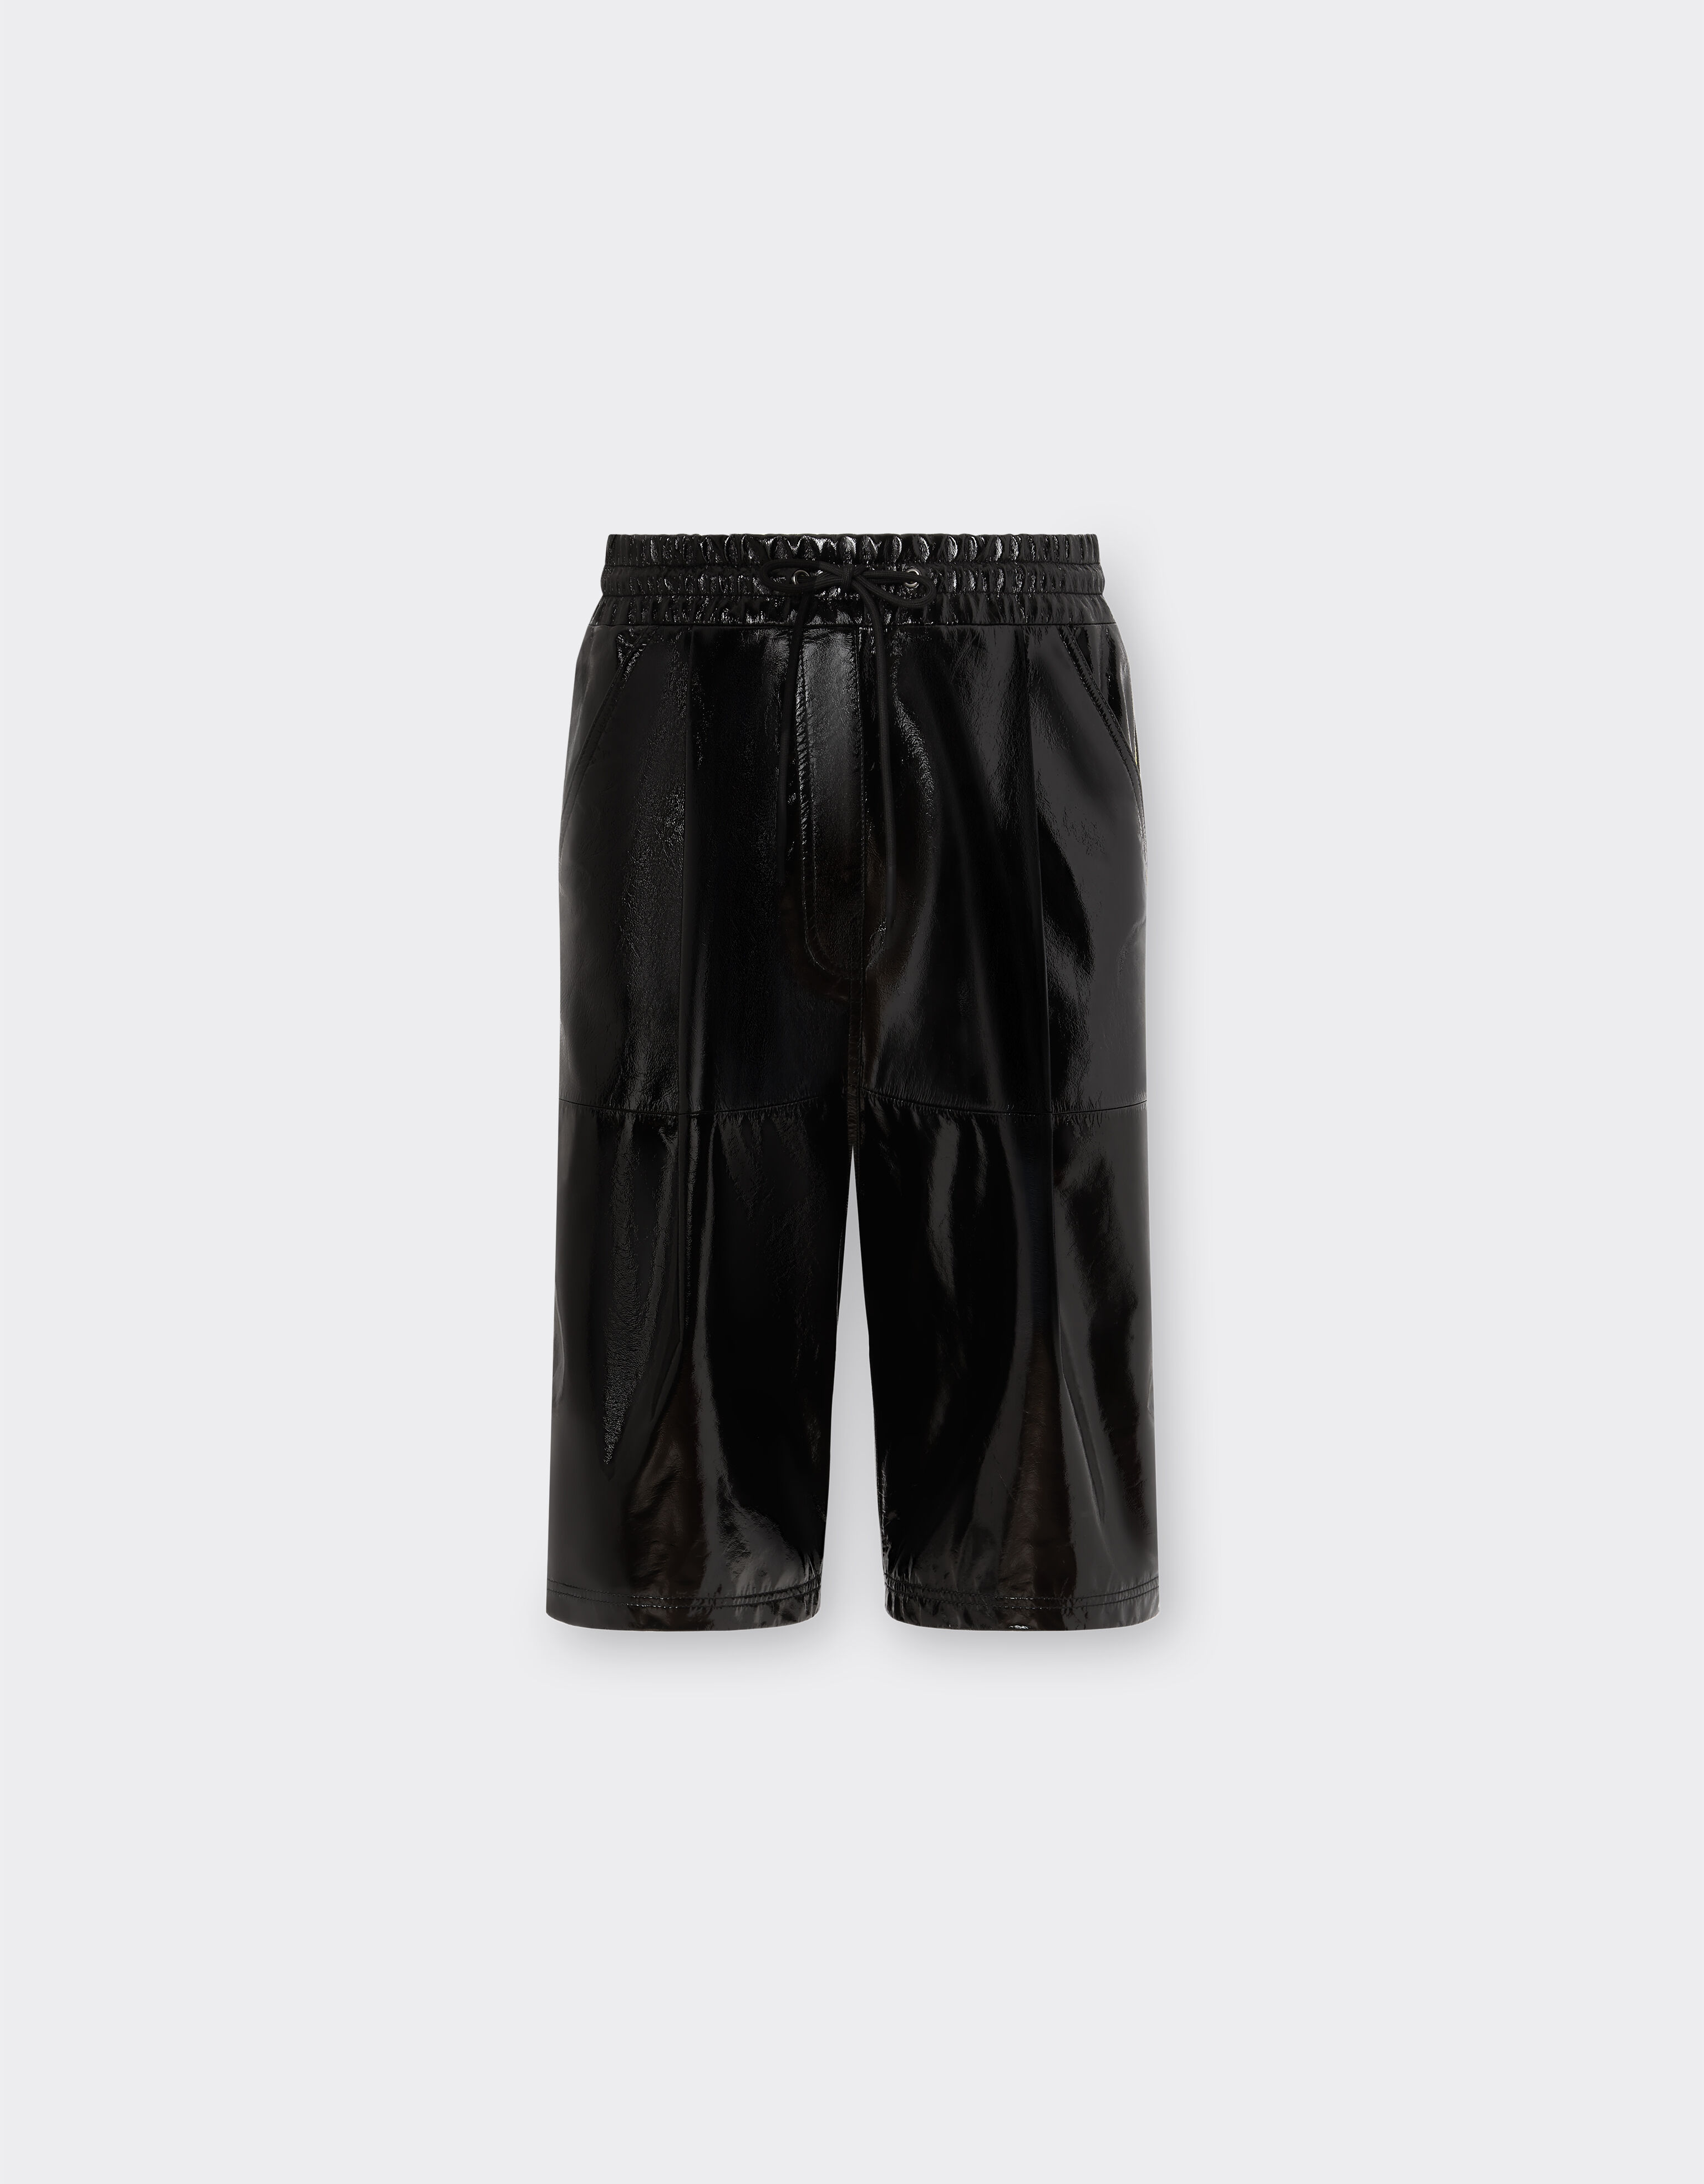 Ferrari Pantalones bermudas de piel acharolada con cinta de grogrén 3D Gris oscuro 21246f